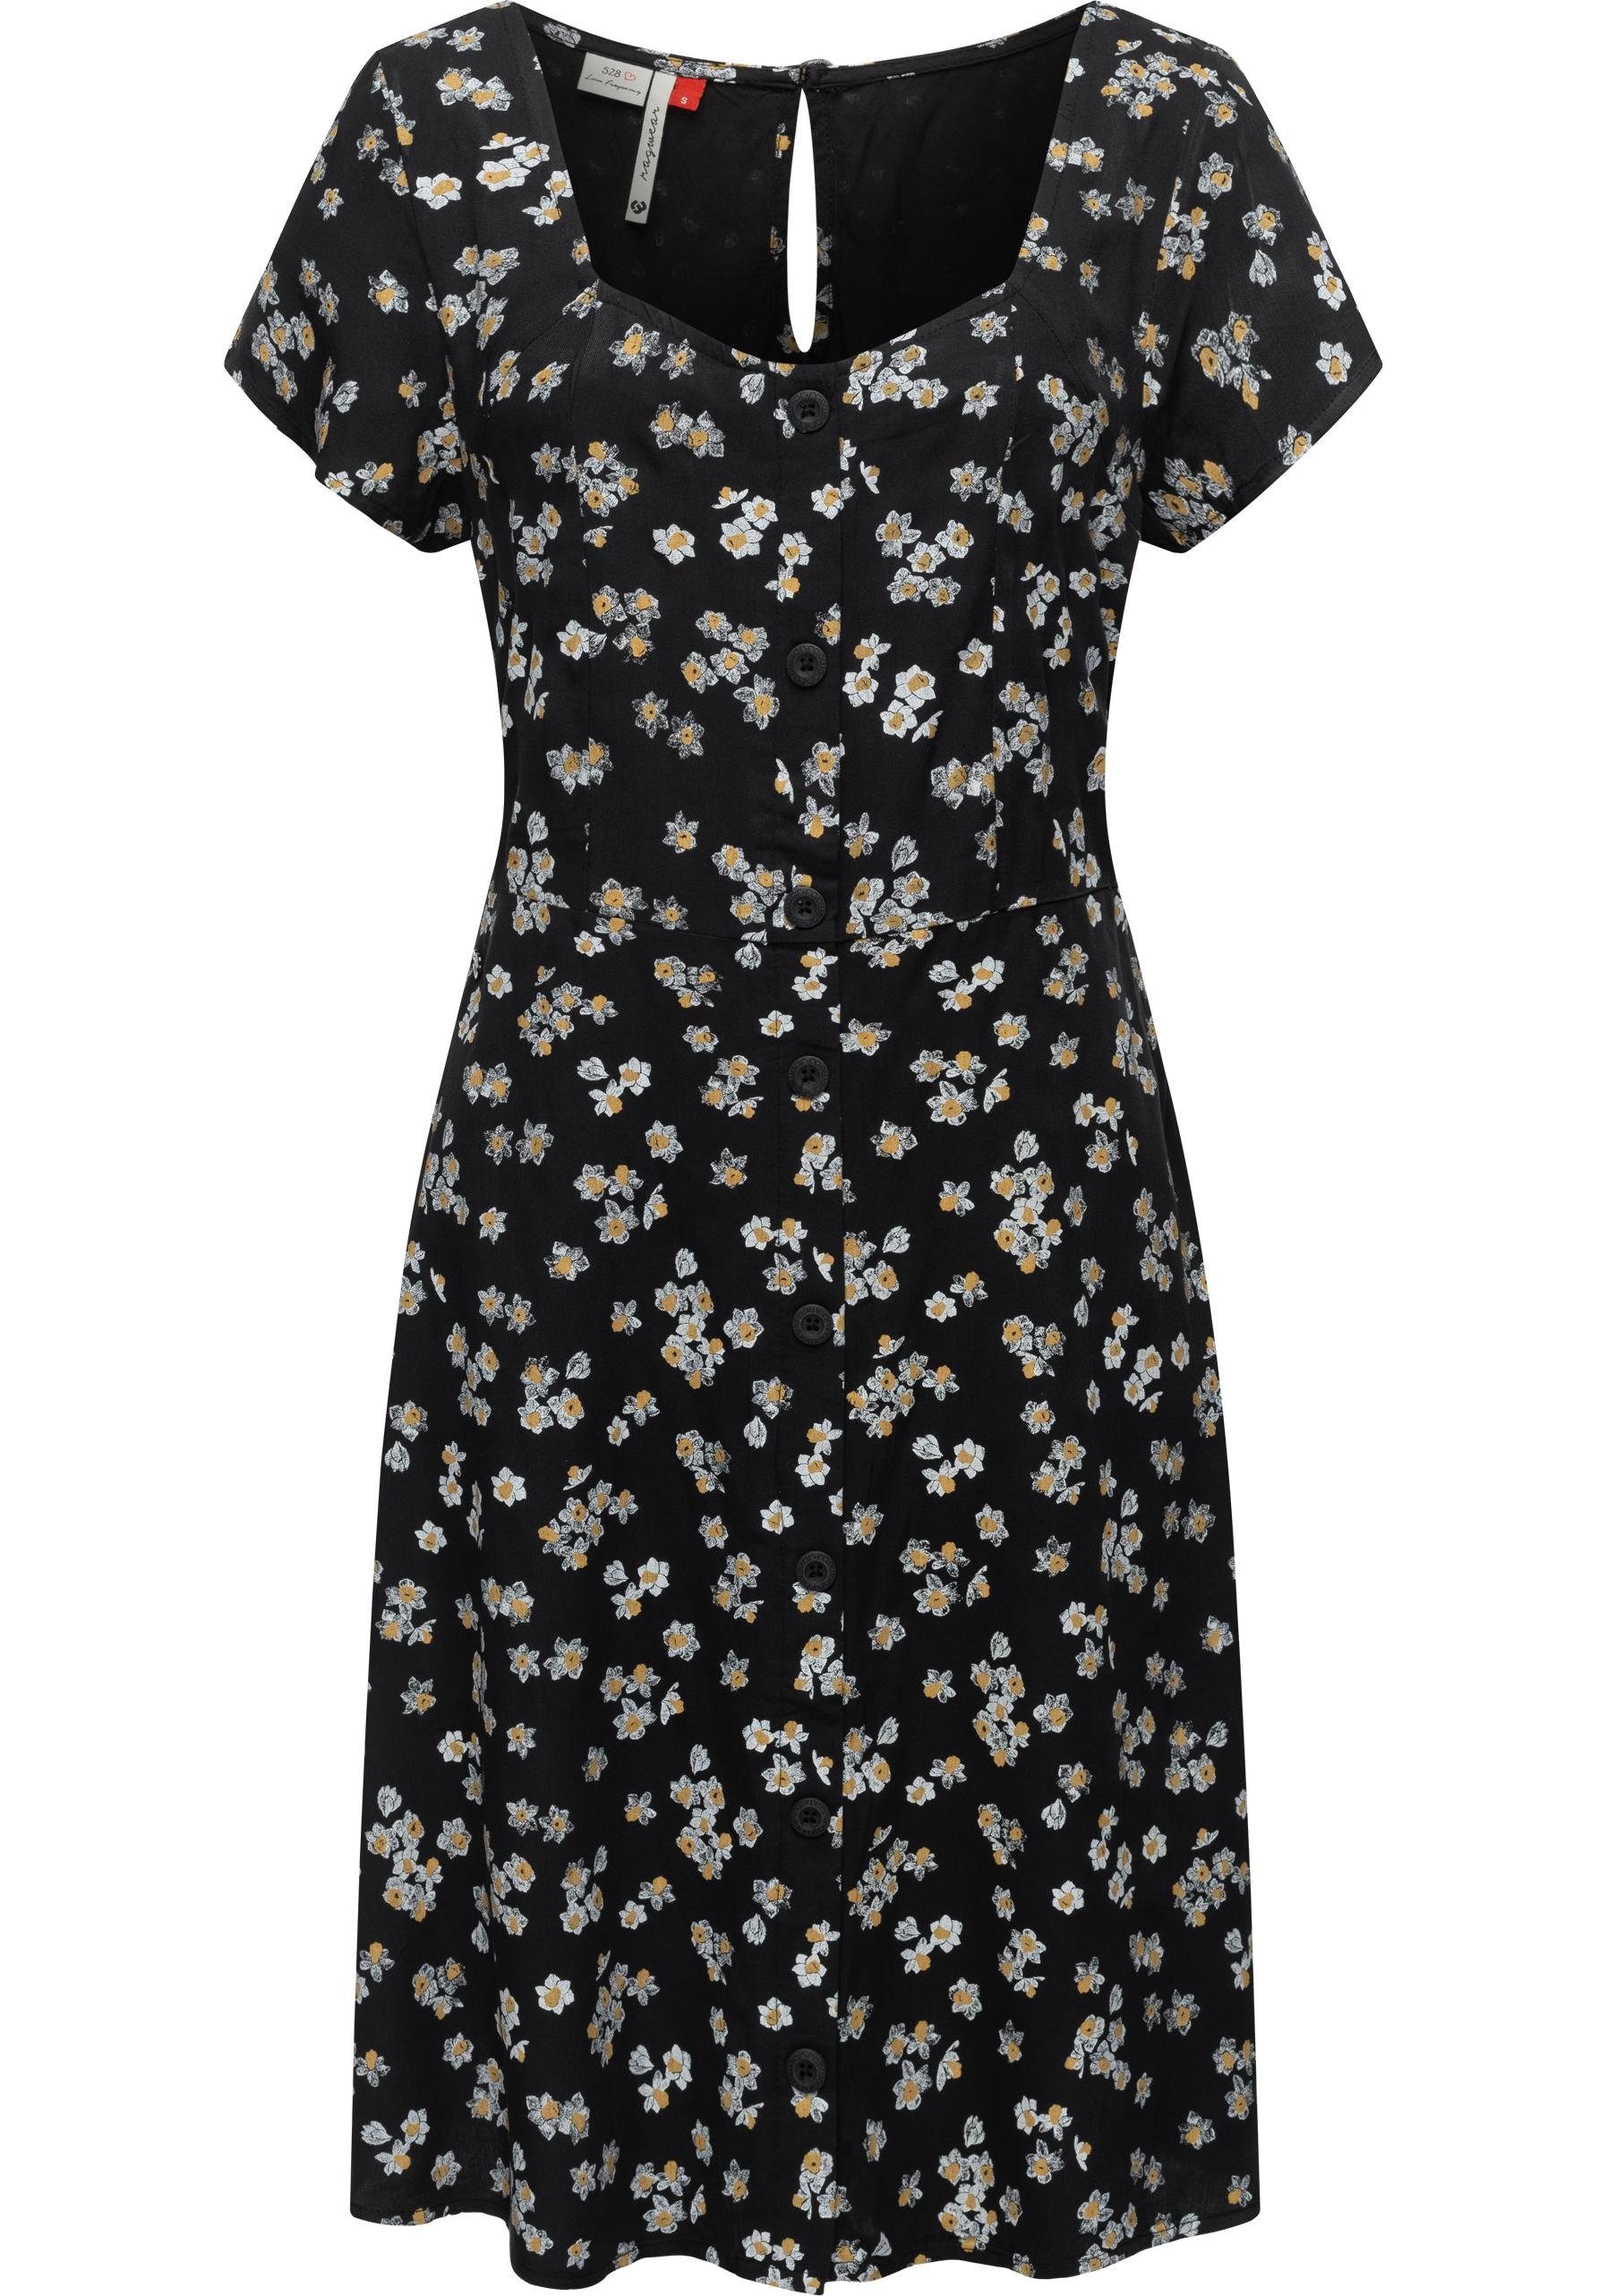 Ragwear Blusenkleid Anerley stylisches Sommerkleid mit Allover Print schwarz